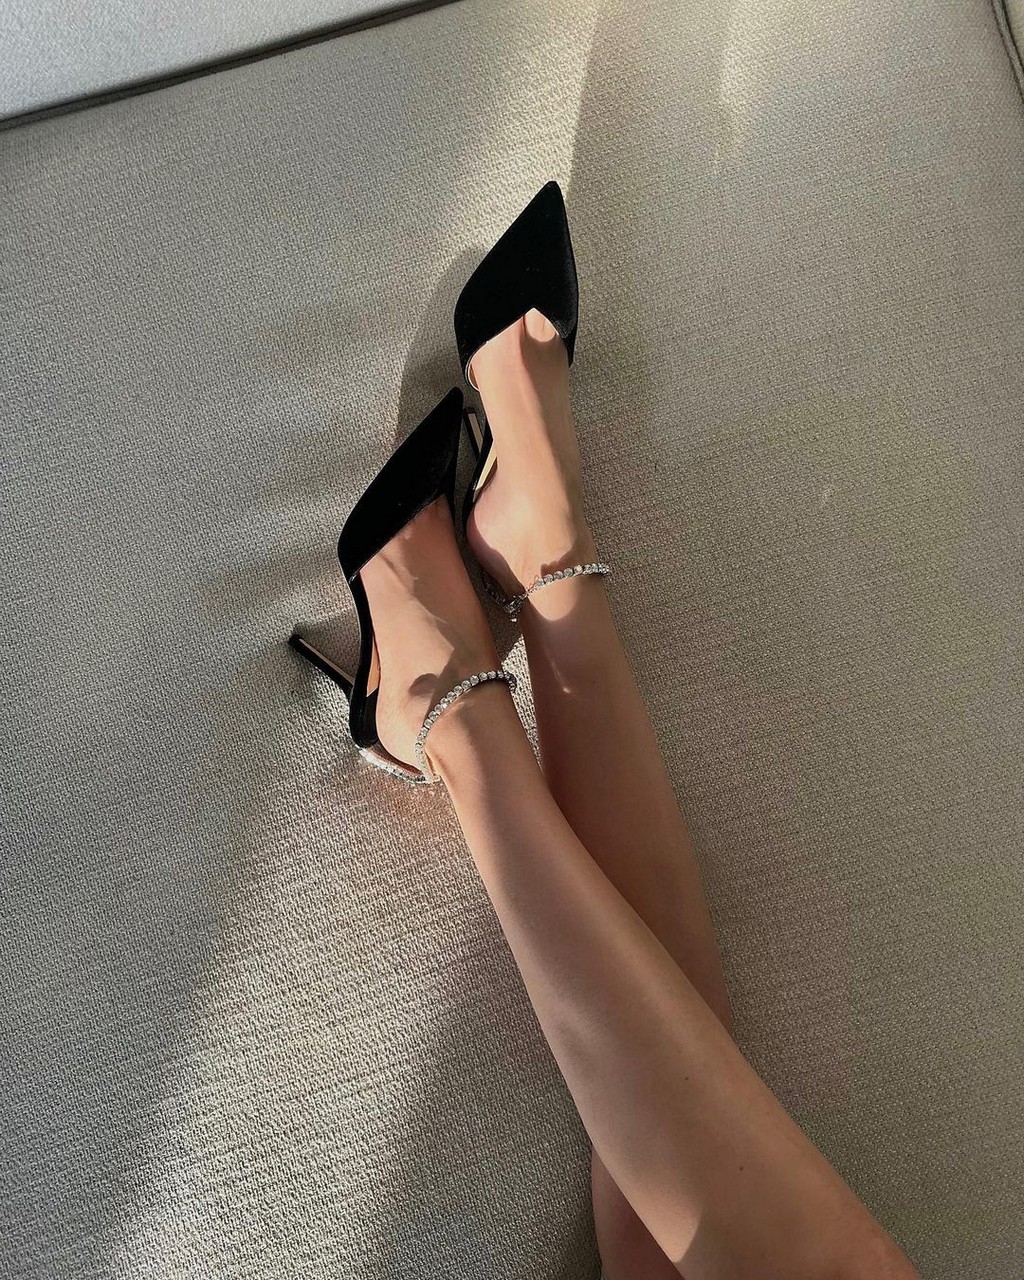 Katerina Sokolov Feet